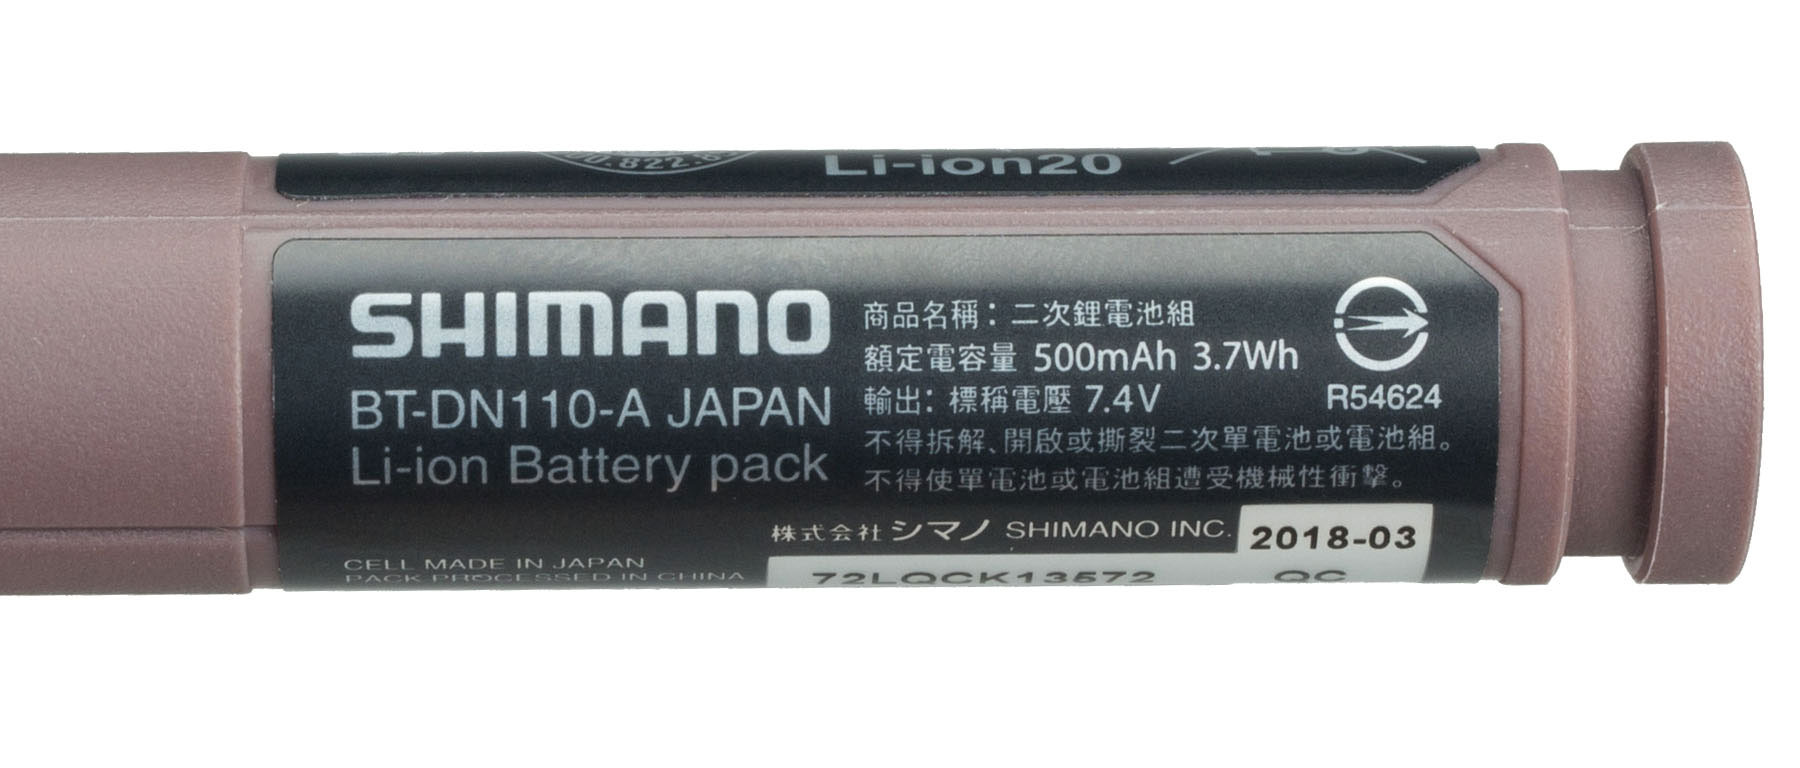 Shimano Di2 E-Tube BT-DN110 Internal Battery